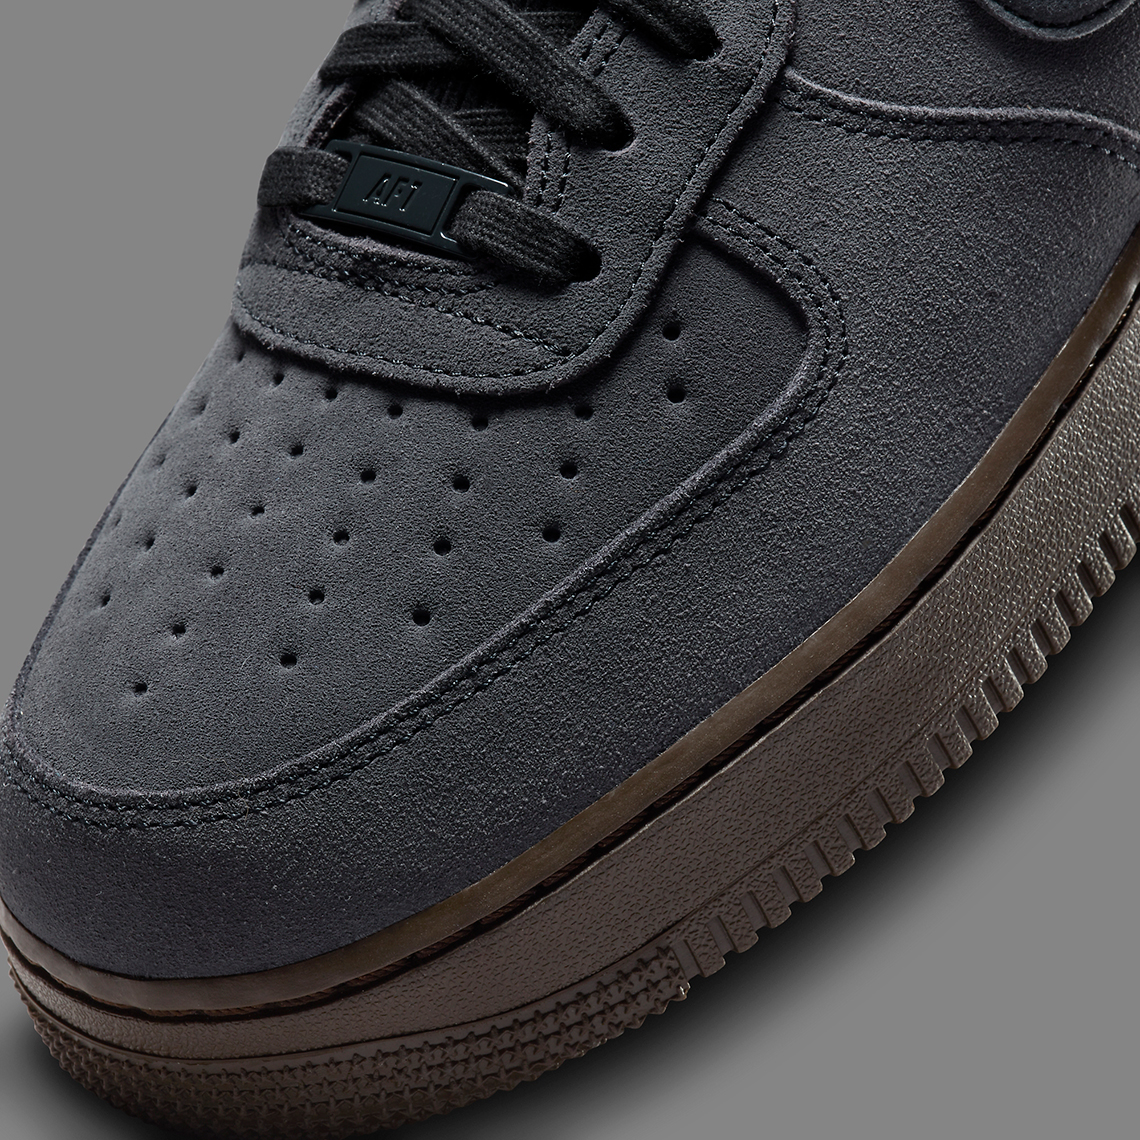 Nike Air Force 1 Off Noir Dark Chocolate On Foot Sneaker Review